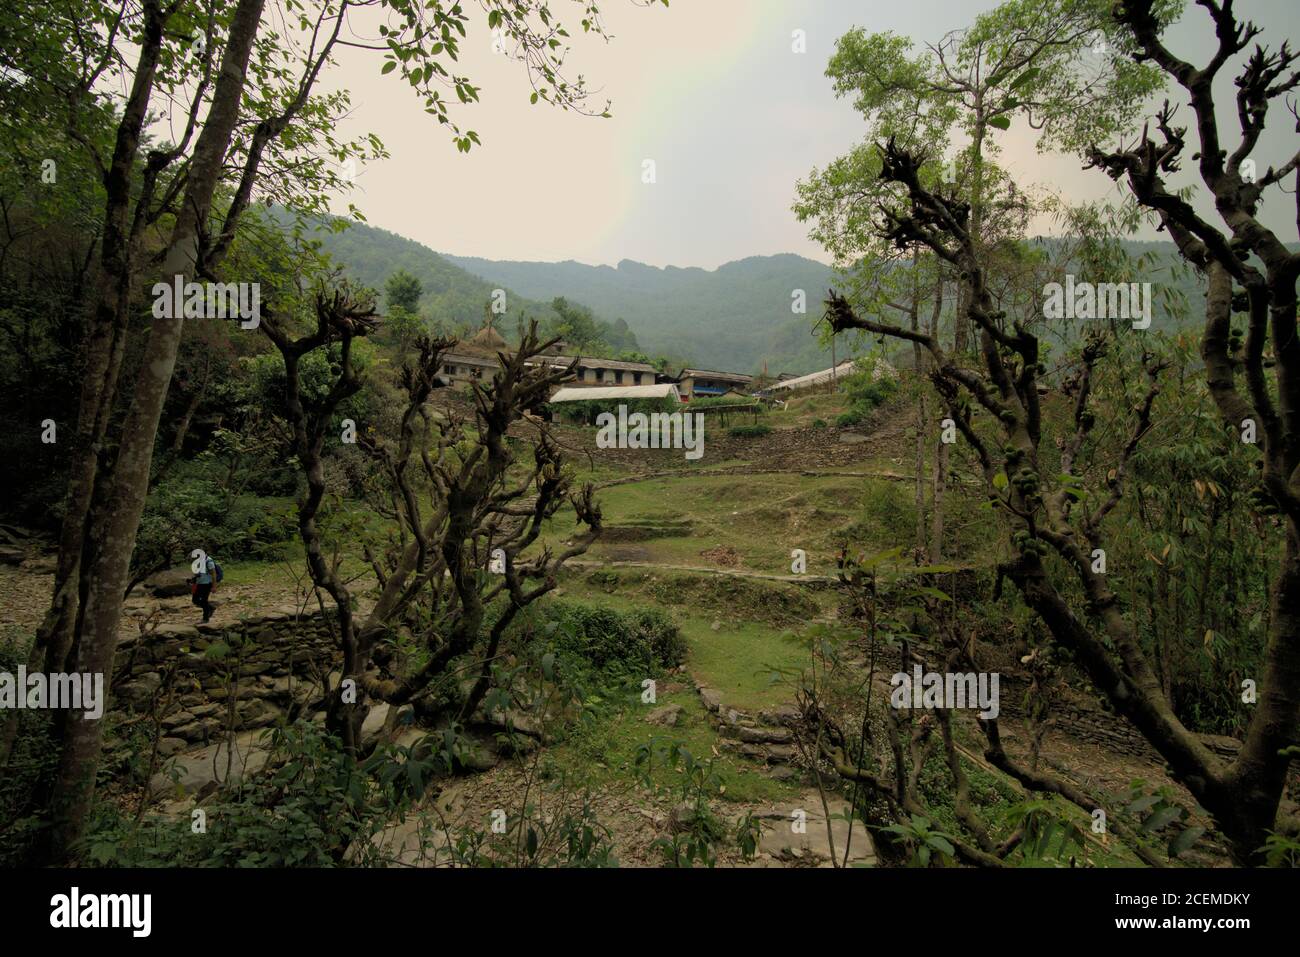 Landwirtschaftliches Dorf Sidhane in Kaski, Nepal, wo die Gemeinde auch Ökotourismus mit Panchase Peaks (Hintergrund) als Hauptattraktion betreibt. Stockfoto